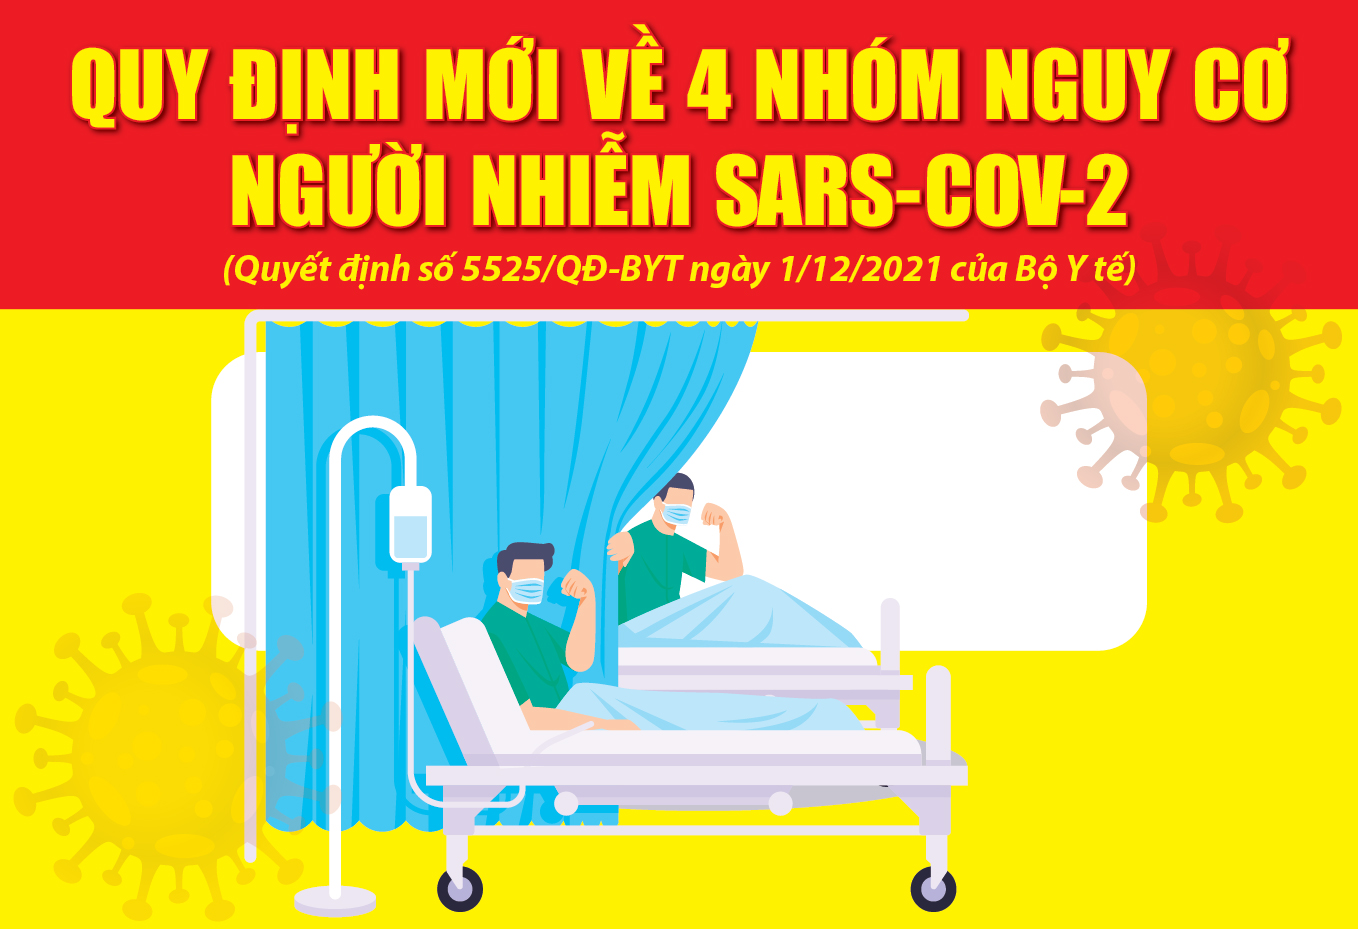 [Infographics] - Quy định mới về 4 nhóm nguy cơ người nhiễm SARS-CoV-2